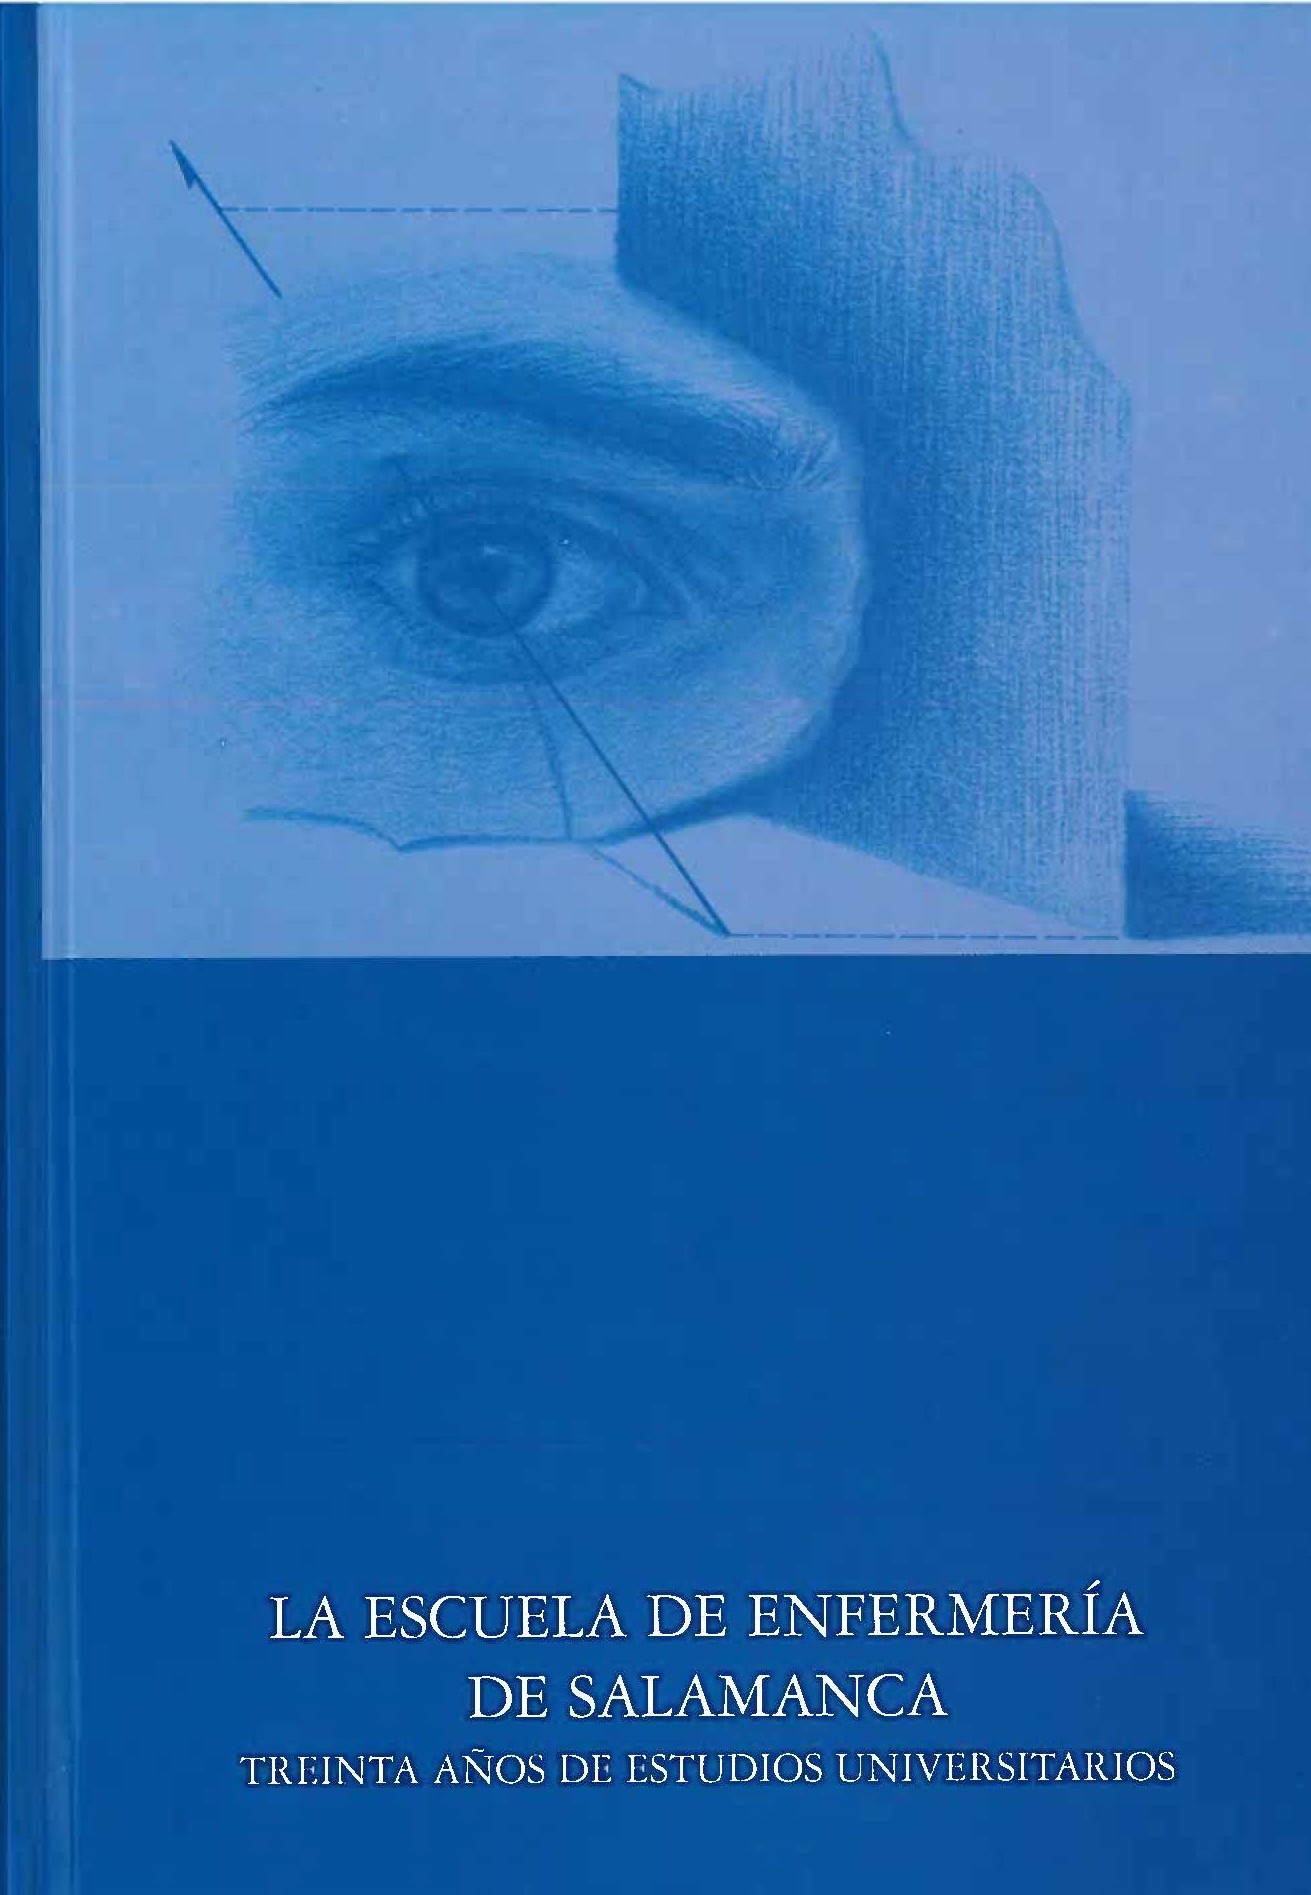 Imagen de portada del libro La Escuela de Enfermería de Salamanca